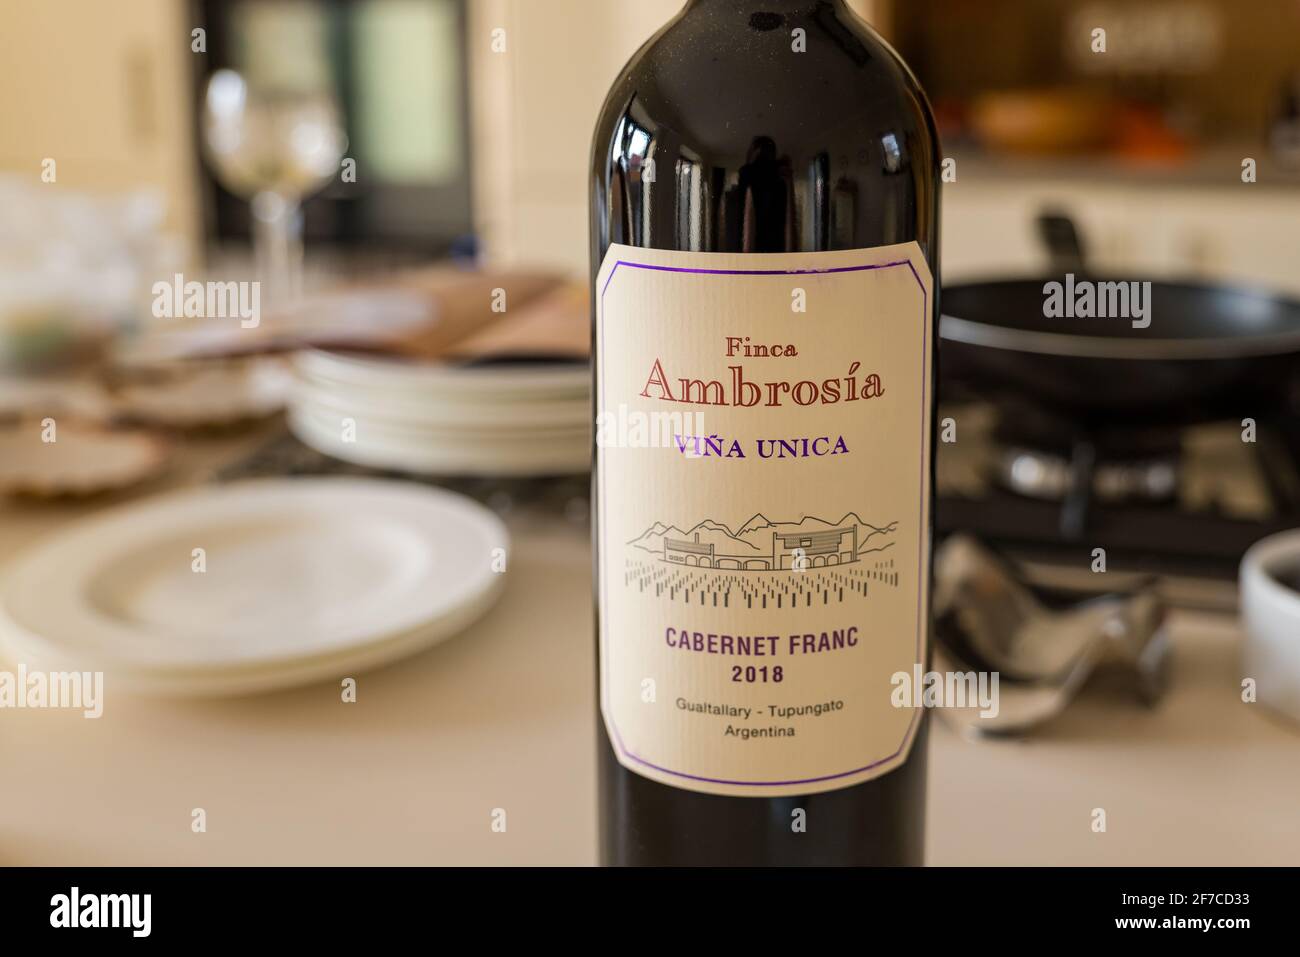 Bouteille de vin rouge argentin sur le comptoir de cuisine pendant la préparation des aliments : Finca Ambrosia Viña Única Cabernet Franc 2018 Banque D'Images